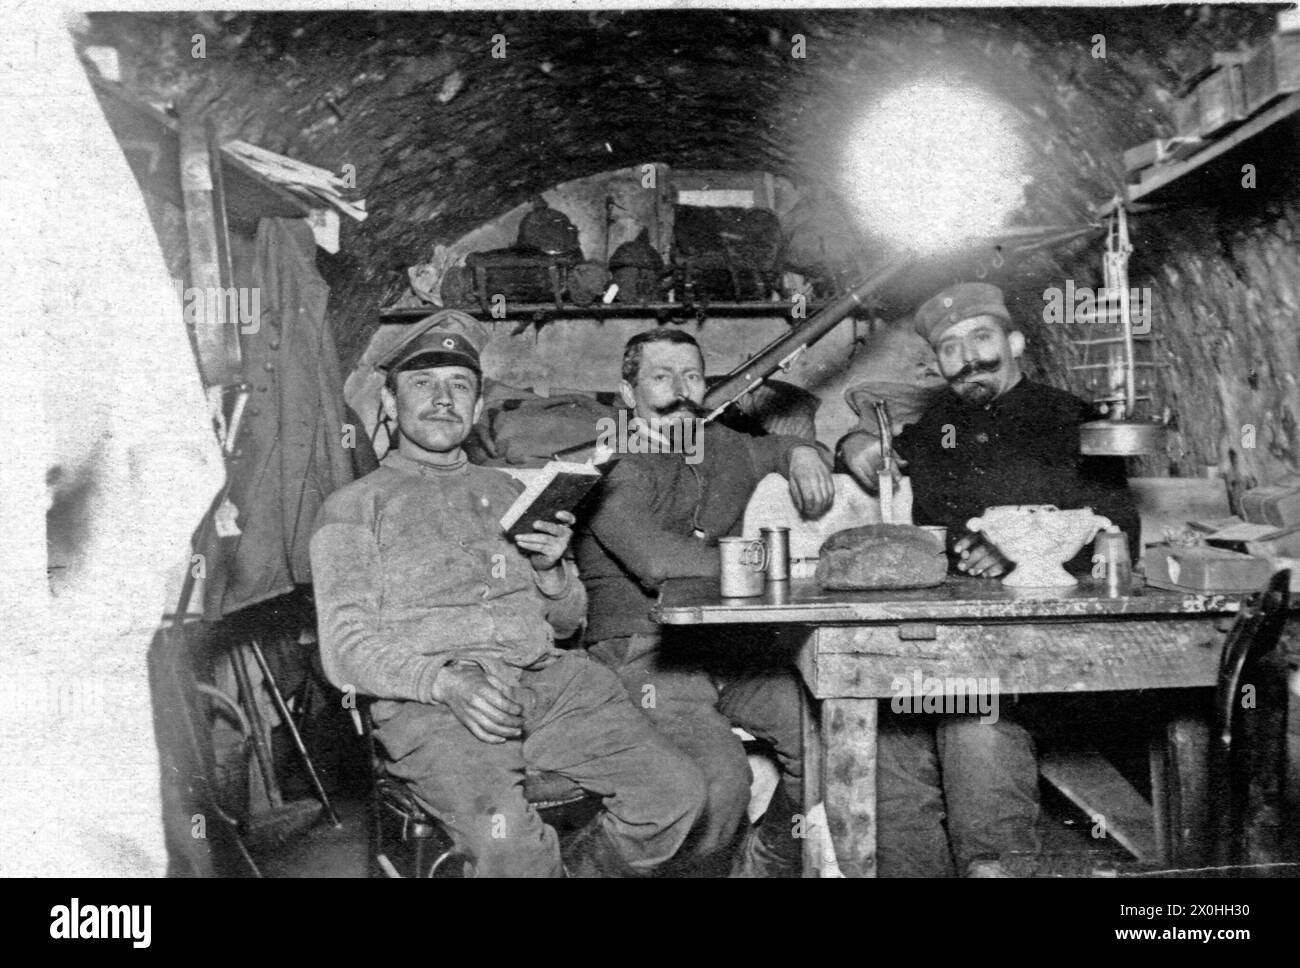 Drei Soldaten in einem Bunker, sehr wahrscheinlich an der französischen Grenze während des Ersten Weltkrieges. Auf dem Tisch steht Verpflegung, im Hintergrund liegt ein Gewehr und im Regal an der Wand die Pickelhauben. (Aufnahmedatum: 01.01.1914-31.12.1914) Stock Photo